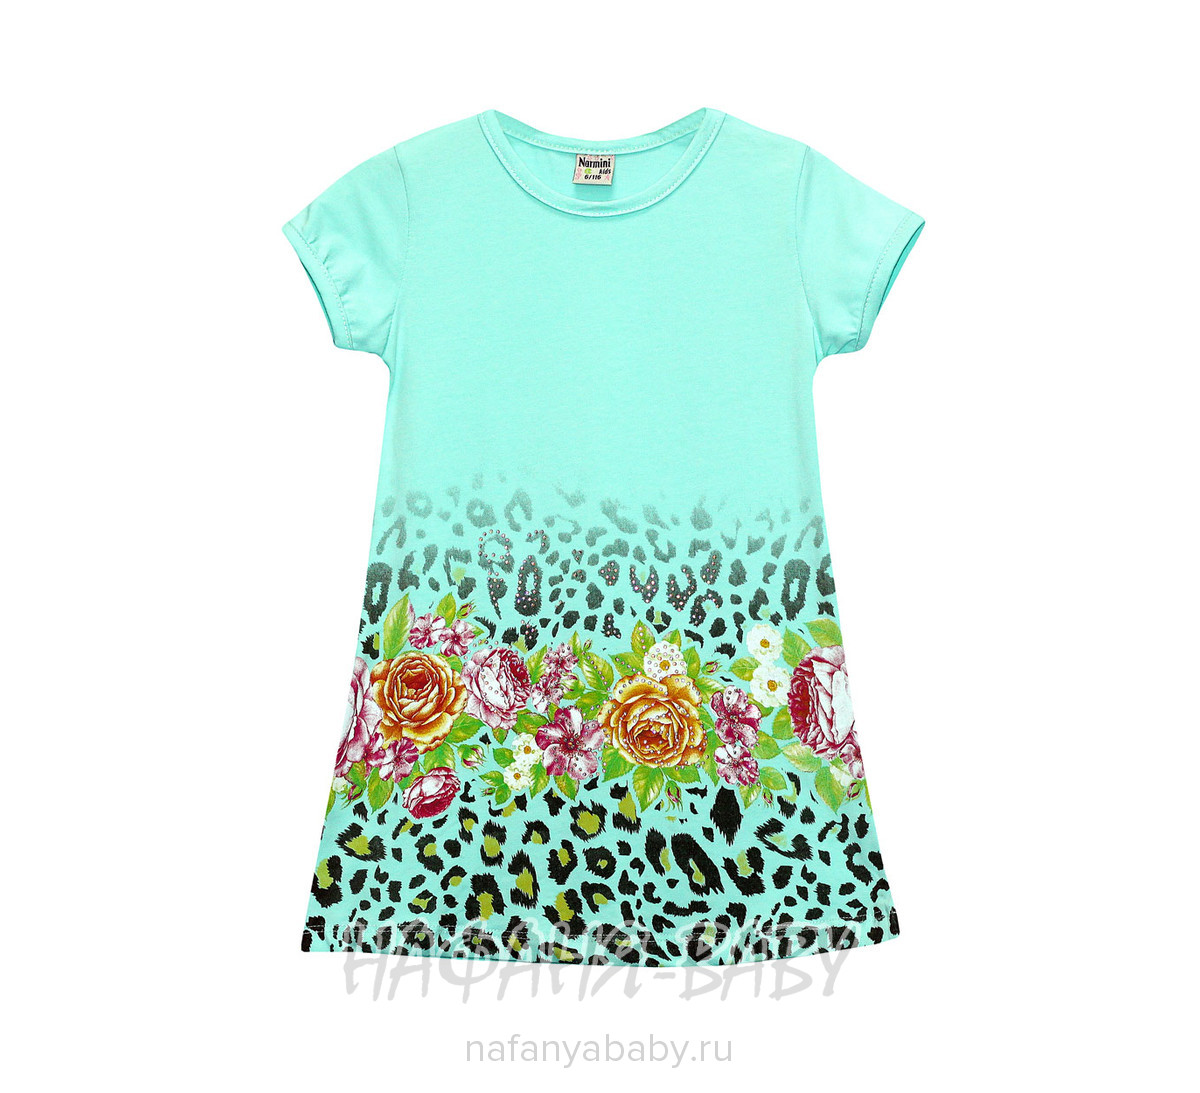 Детское платье NARMINI арт: 5517, 1-4 года, 5-9 лет, цвет малиновый, оптом Турция